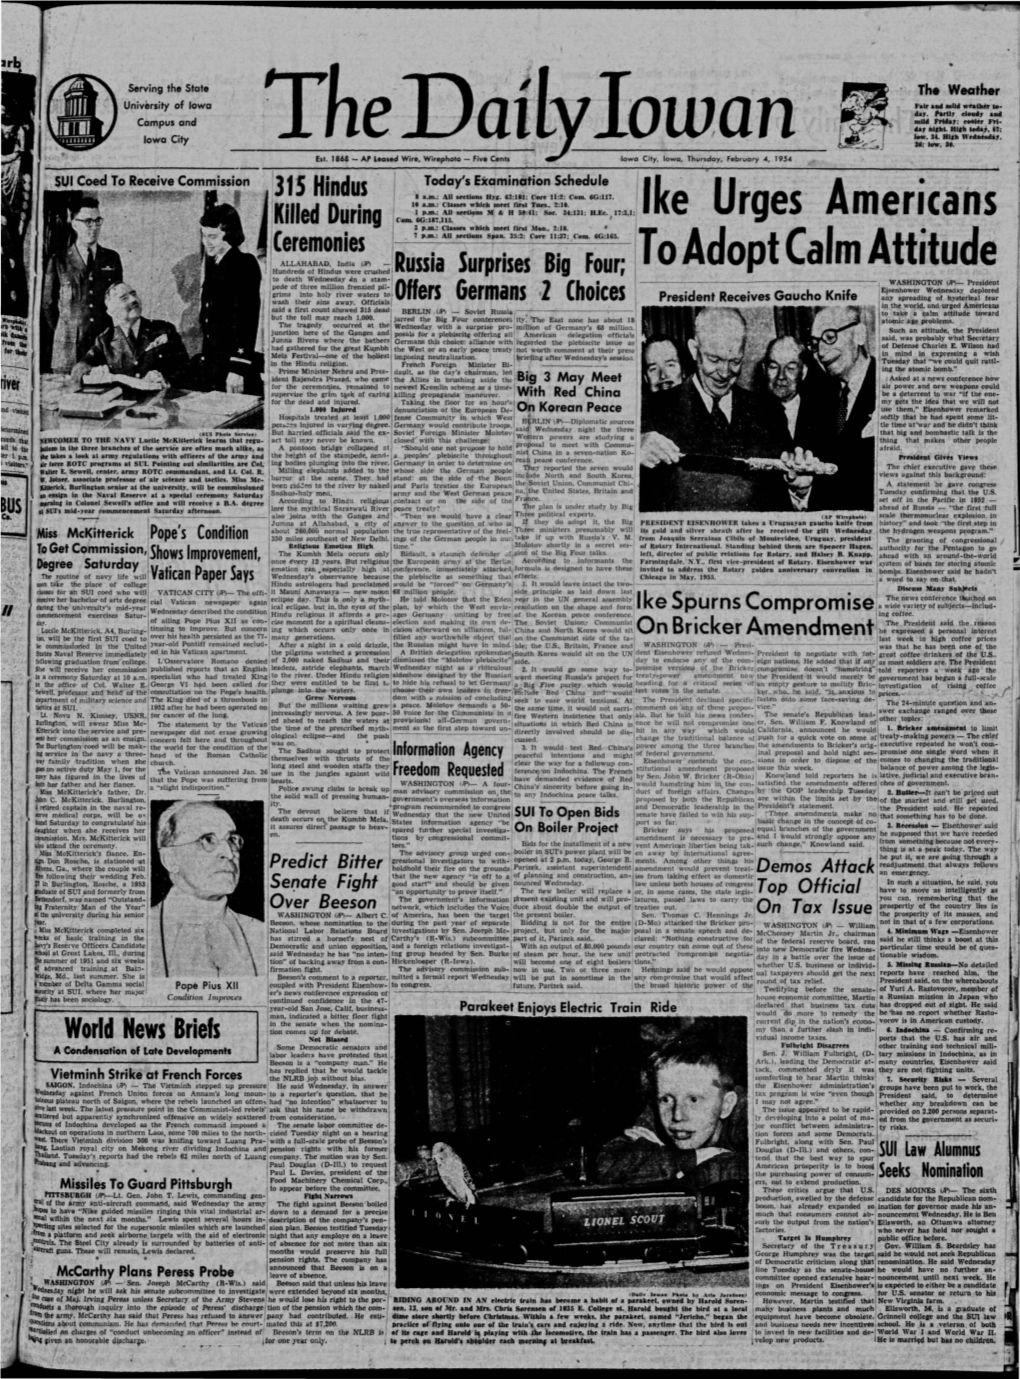 Daily Iowan (Iowa City, Iowa), 1954-02-04